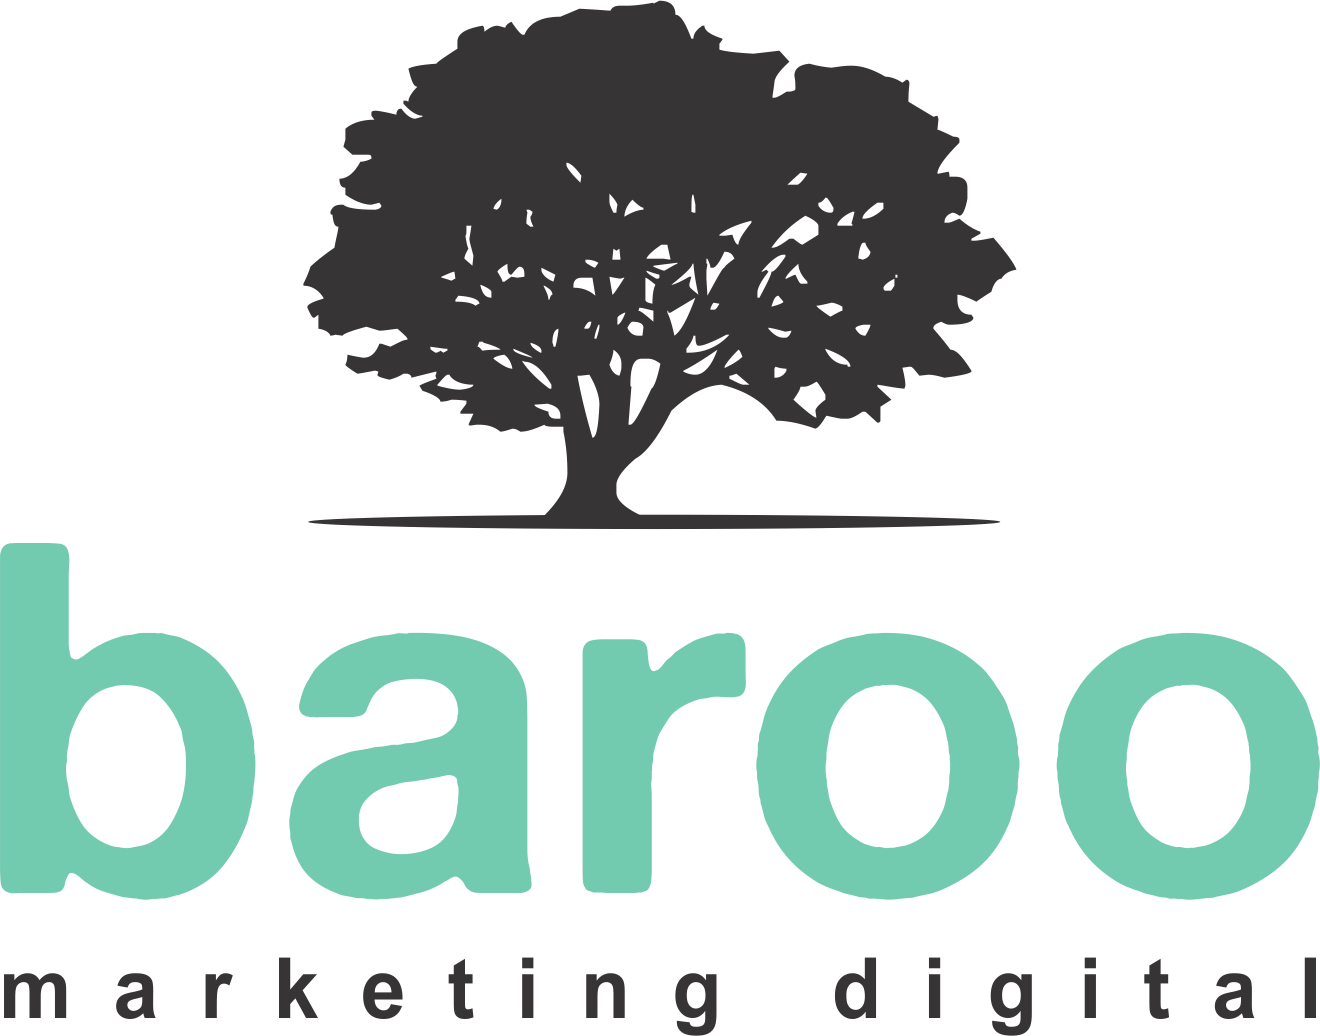 baroo-marketing-digital